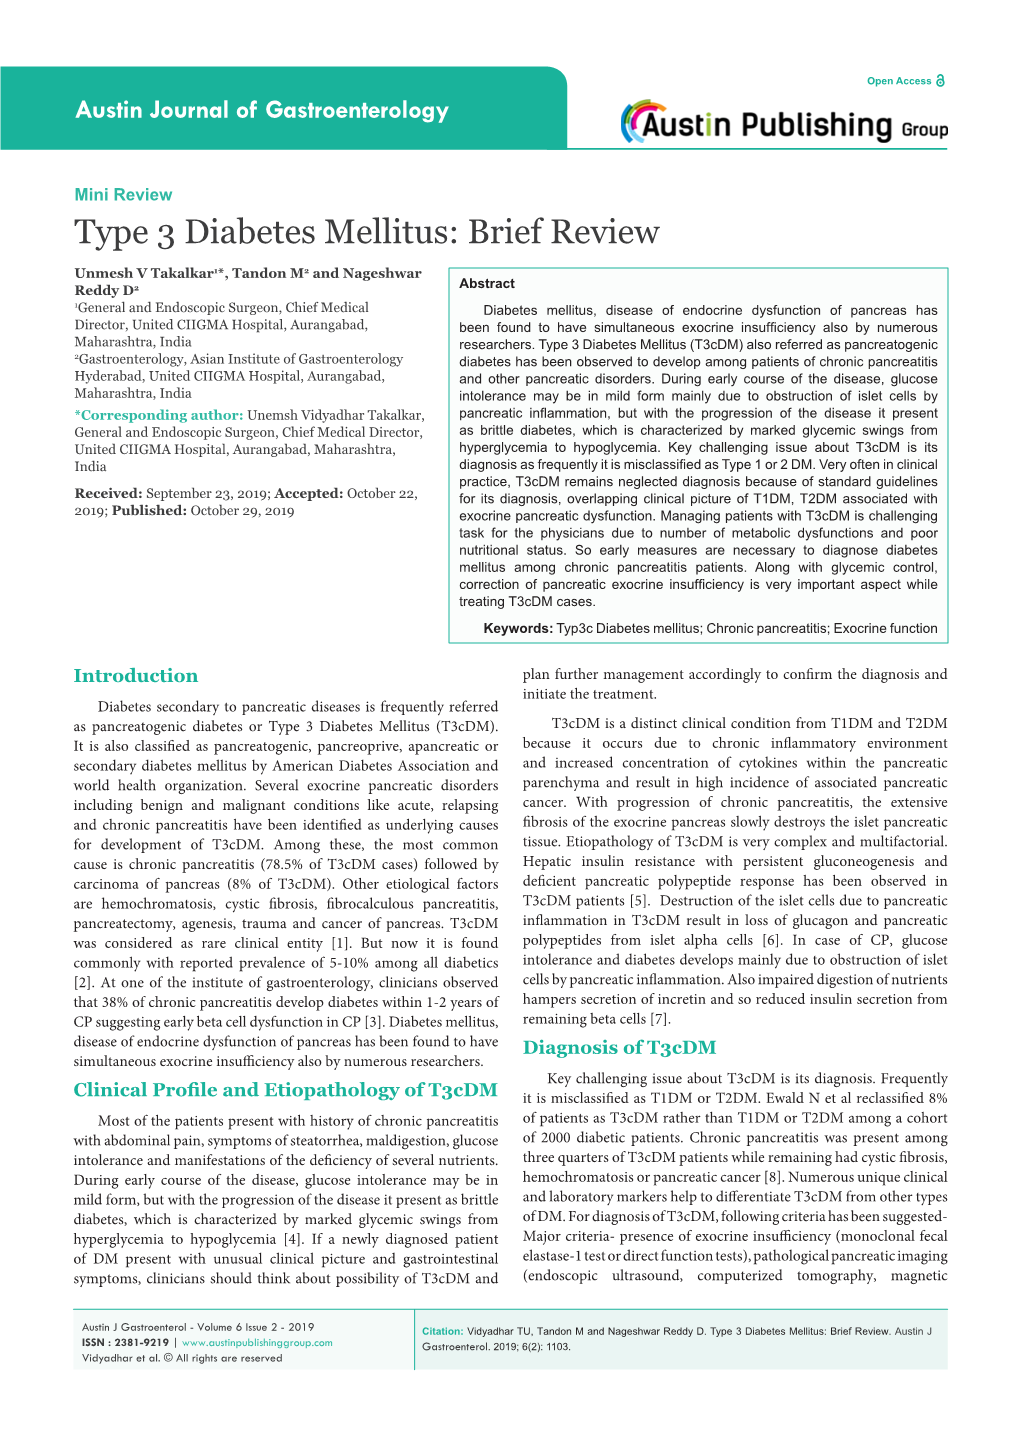 Type 3 Diabetes Mellitus: Brief Review